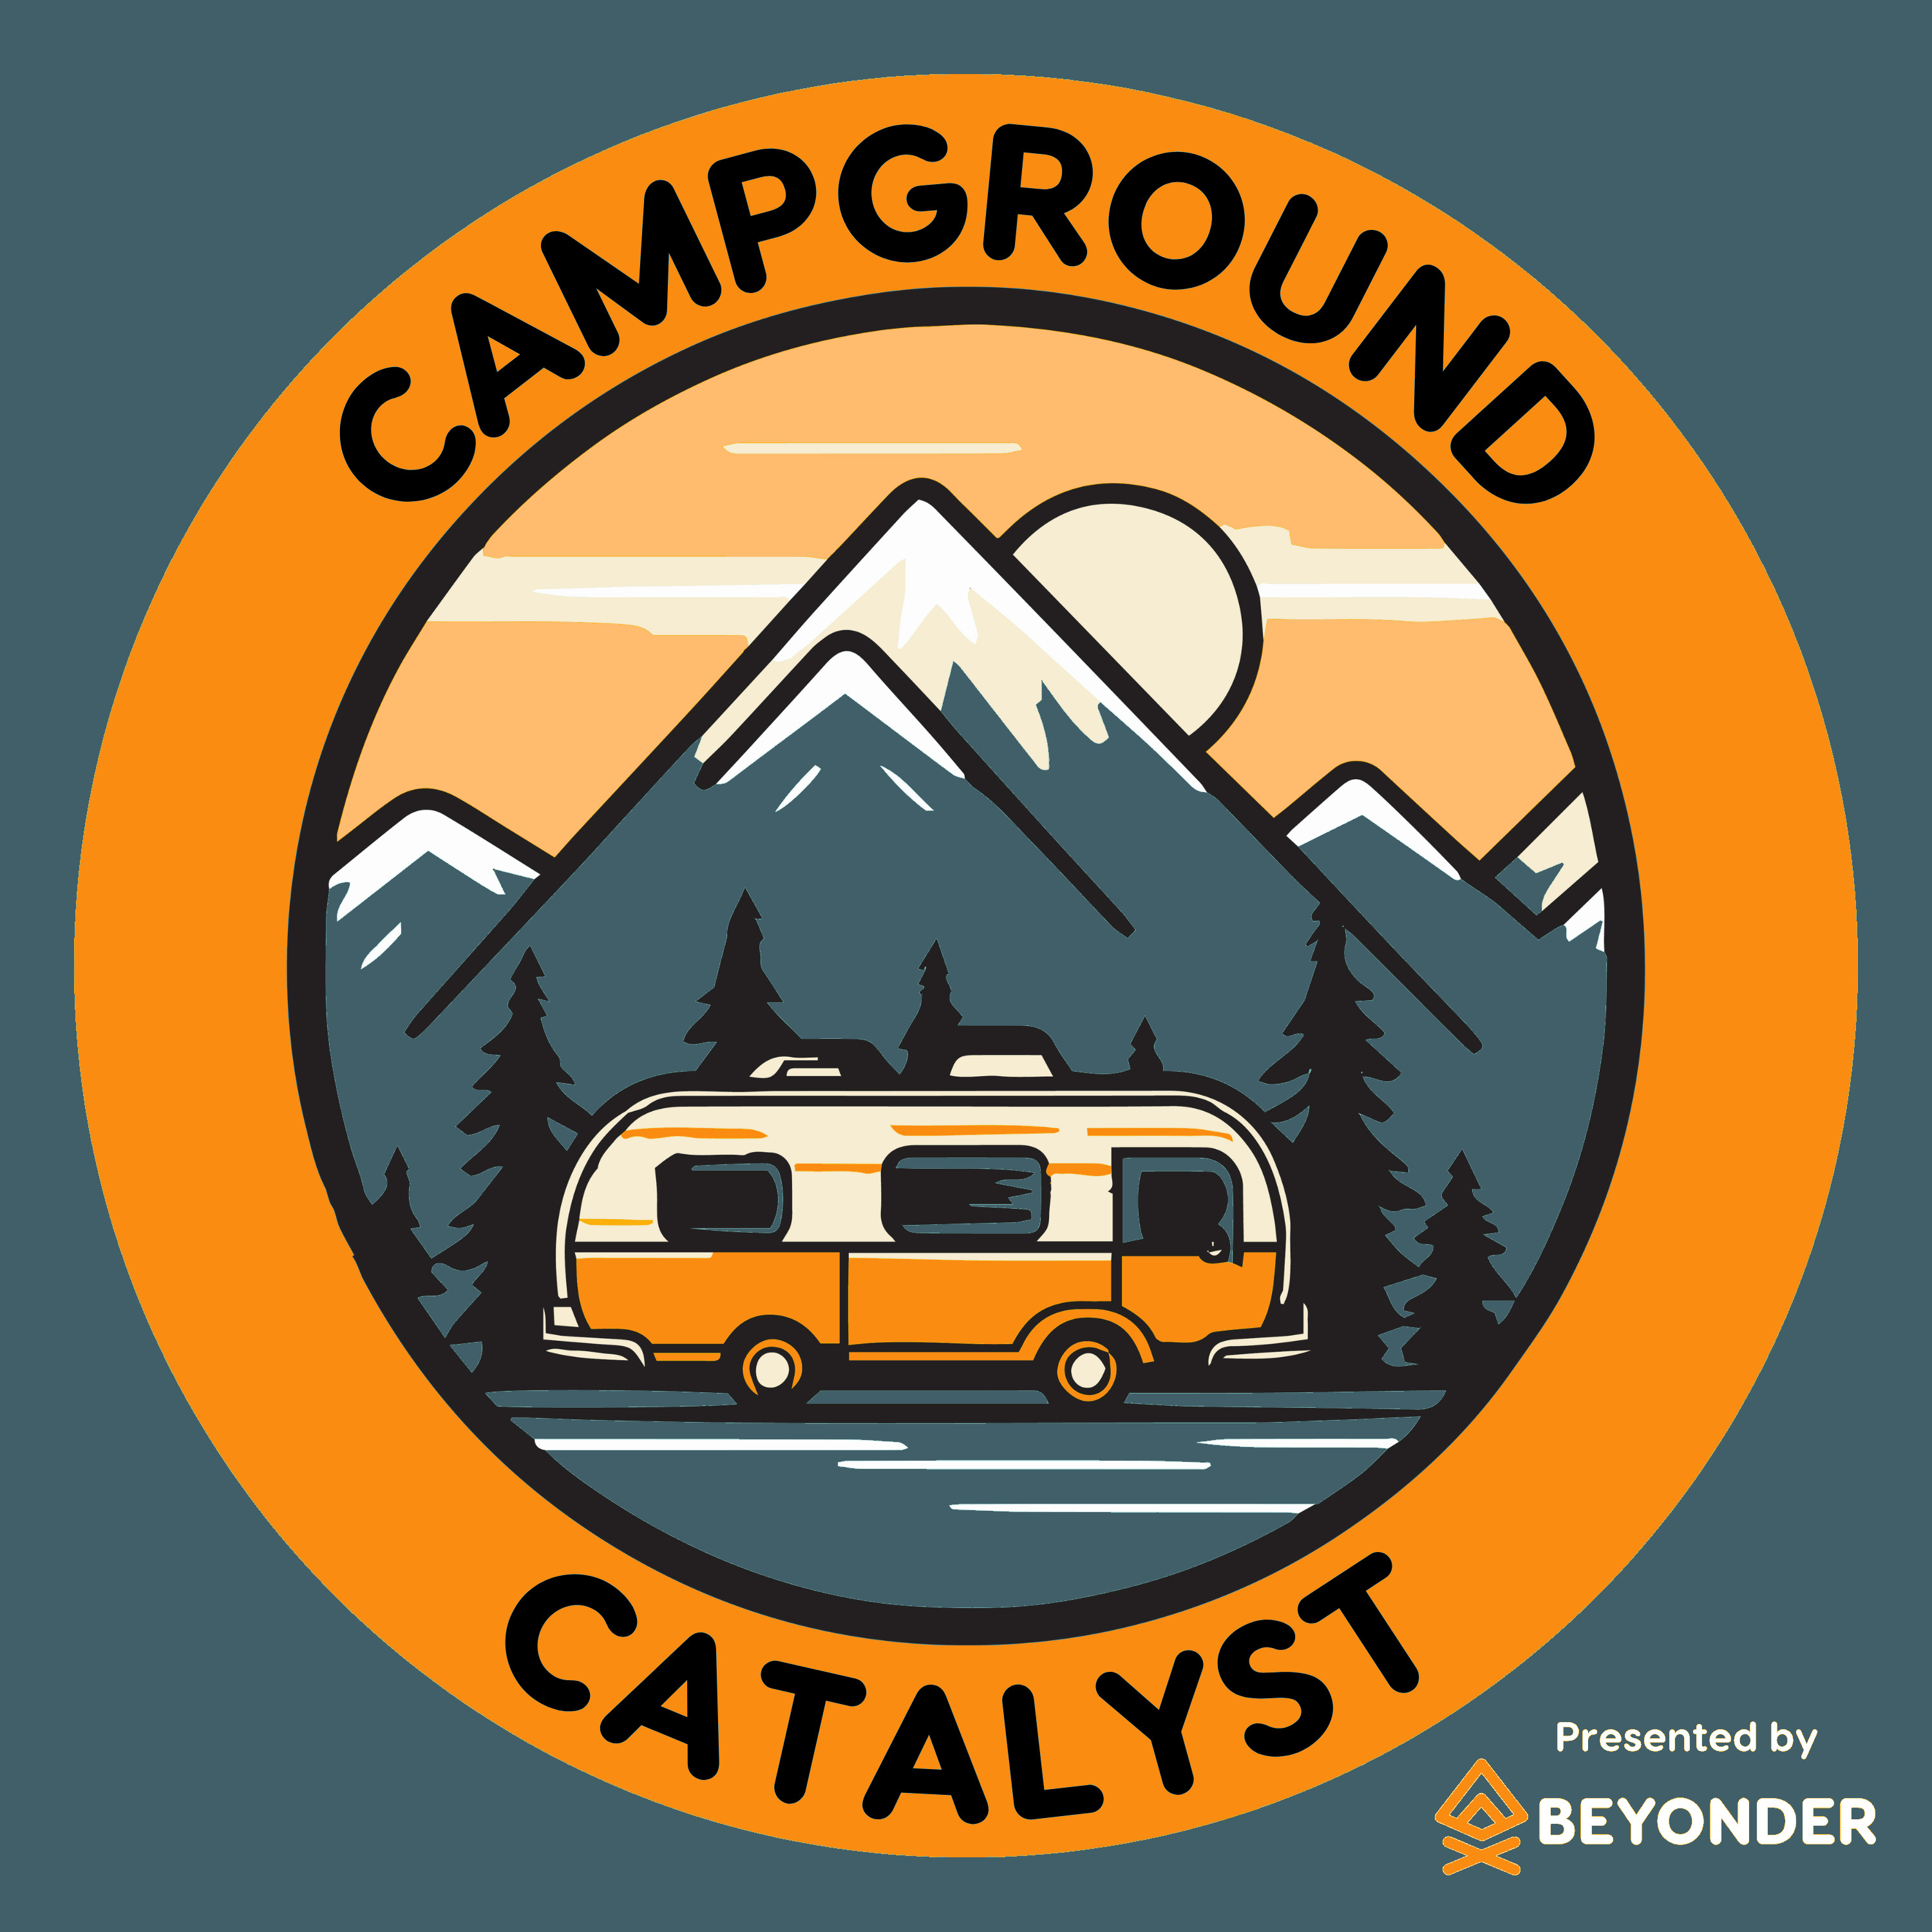 Campground Catalyst